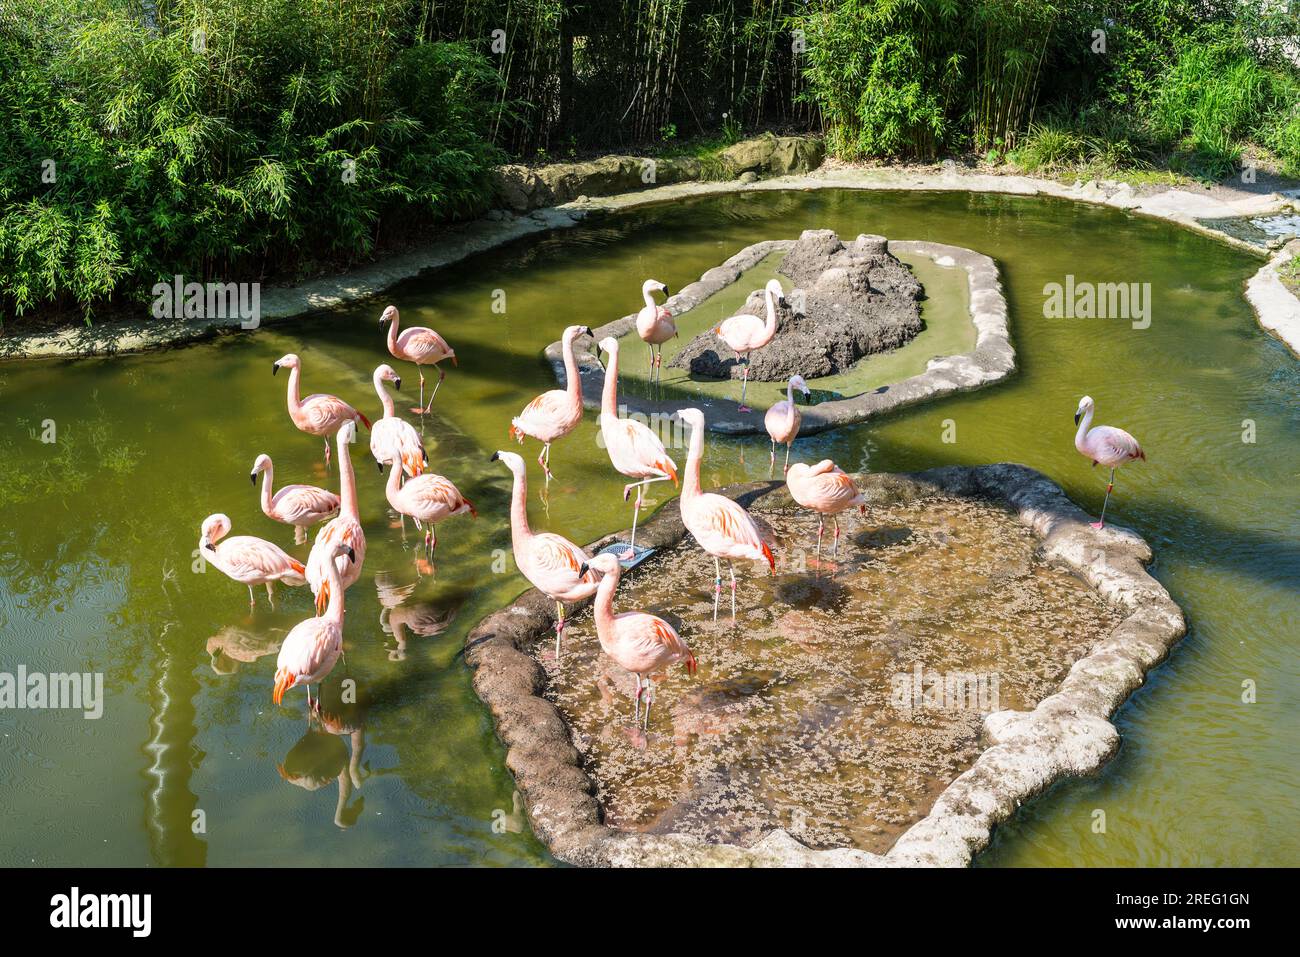 Flamants roses dans le zoo vert de Wuppertal en Allemagne Banque D'Images